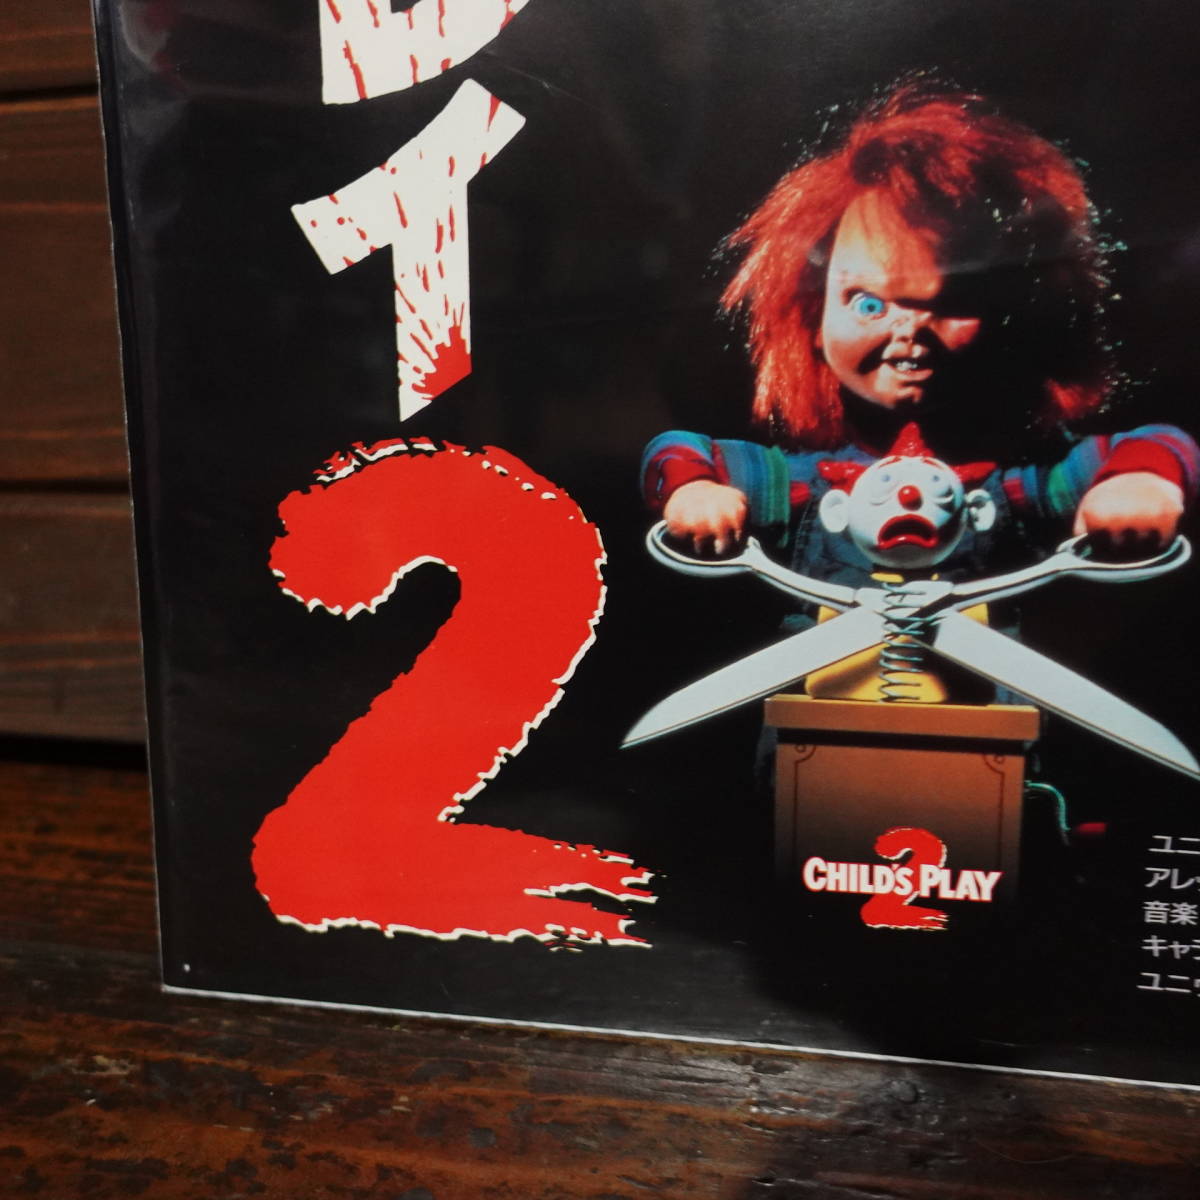  фильм постер [ детский * Play 2/A]1990 год первый публичный версия /Child\'s Play2/ коричневый  ключ /Chucky